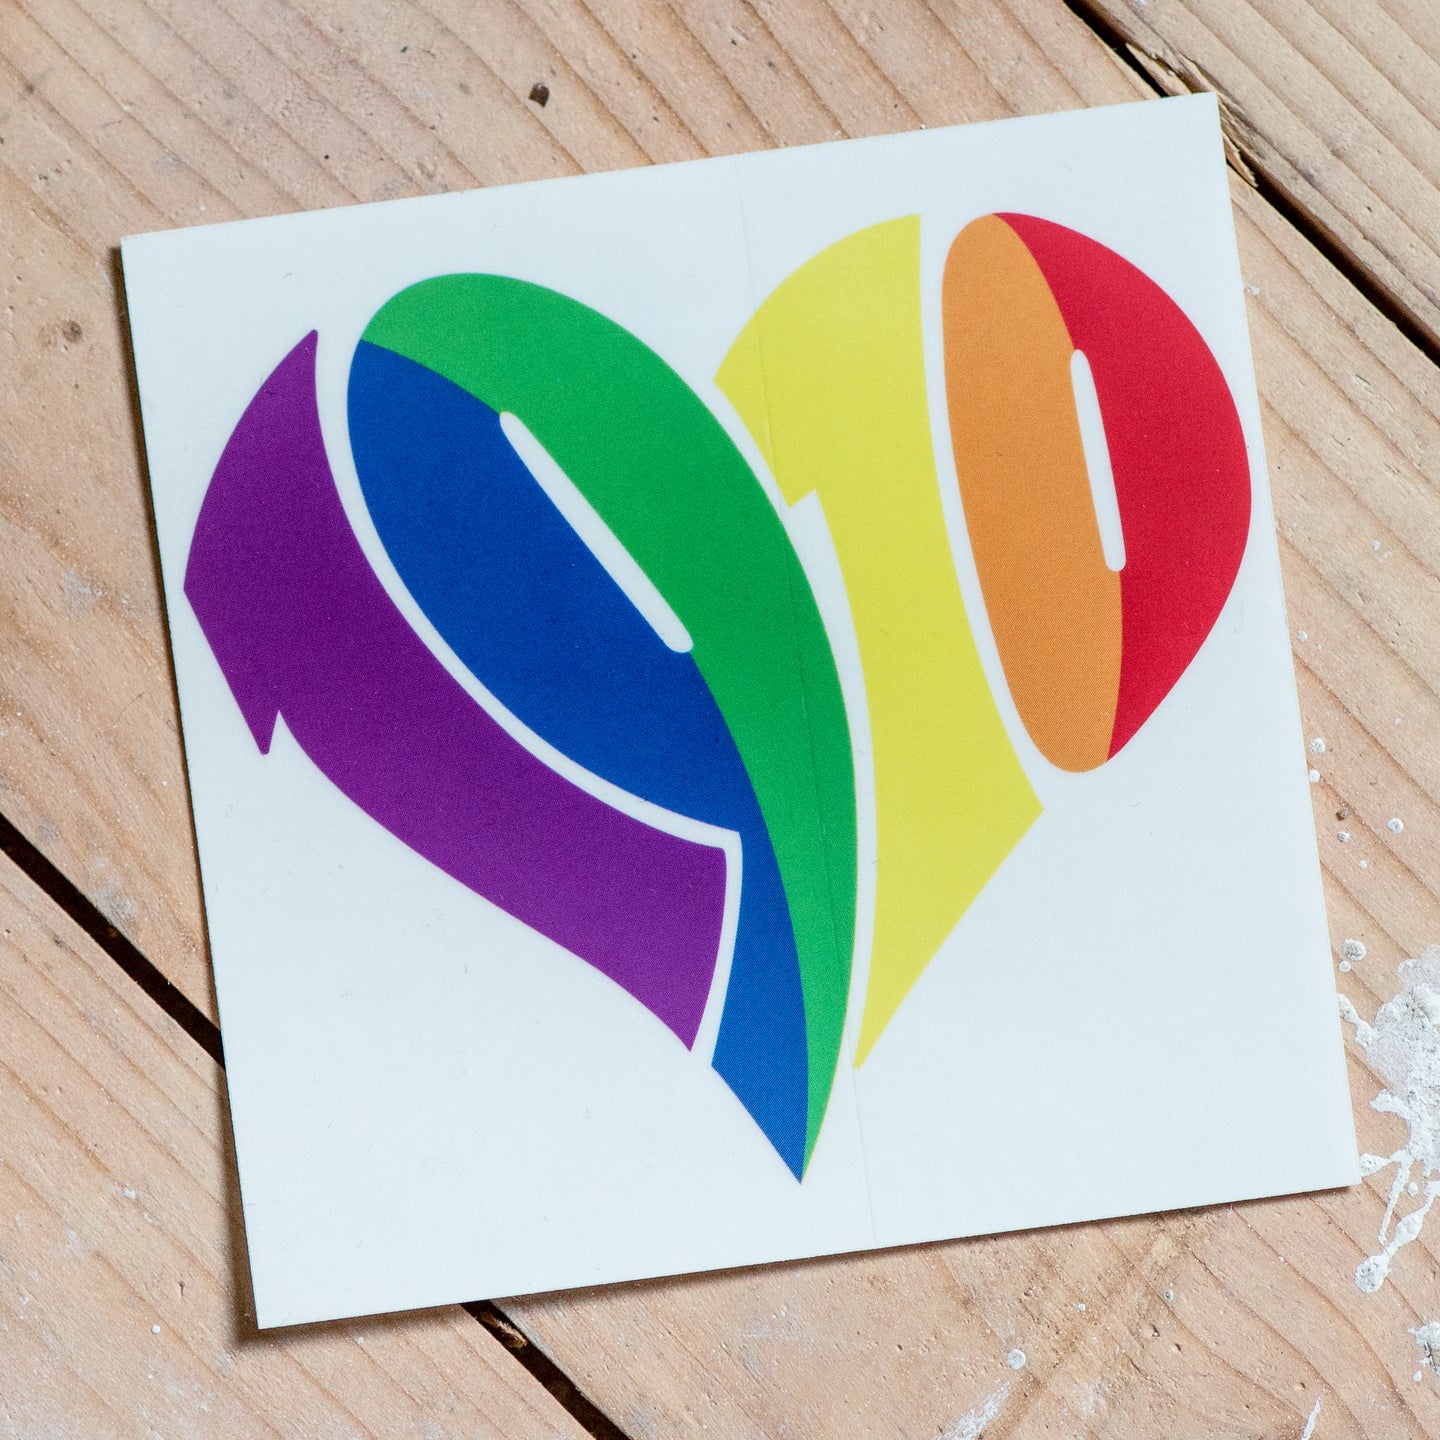 Auf dem Foto sieht man einen Holzfußboden. Auf diesem liegt ein quadratischer weißer Sticker mit großem 1910 Herz in regenbogenfarben.